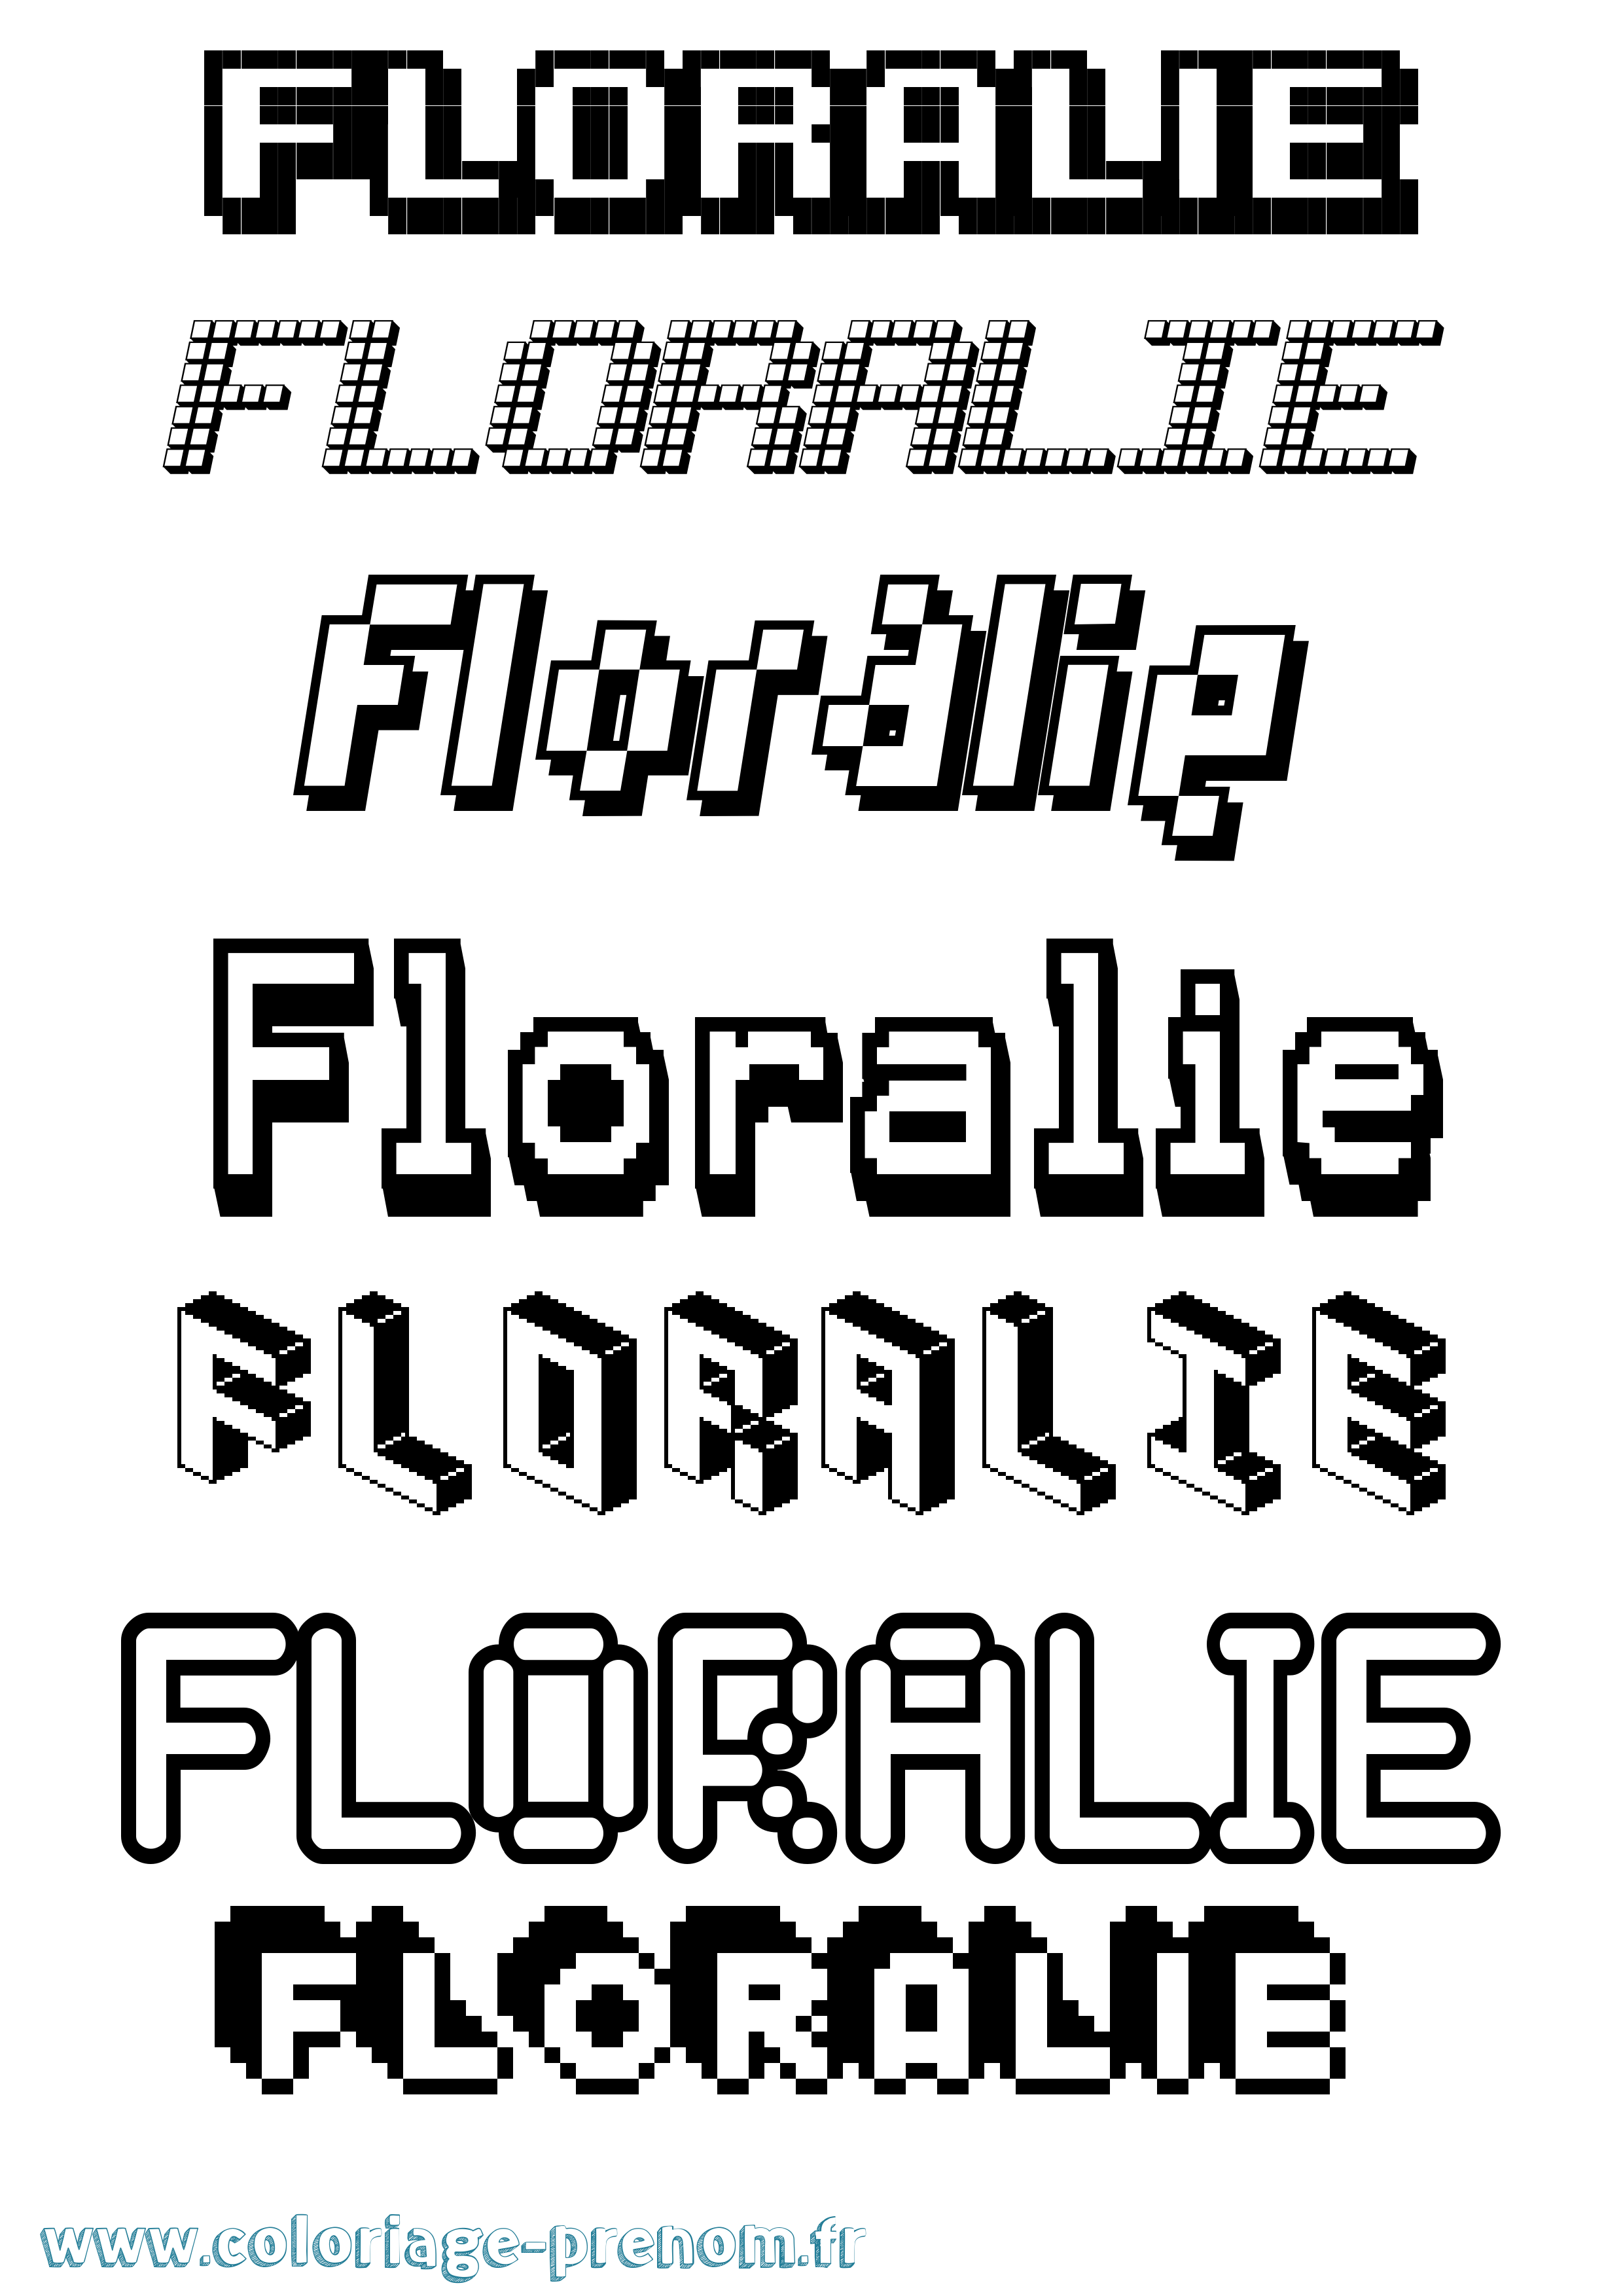 Coloriage prénom Floralie Pixel